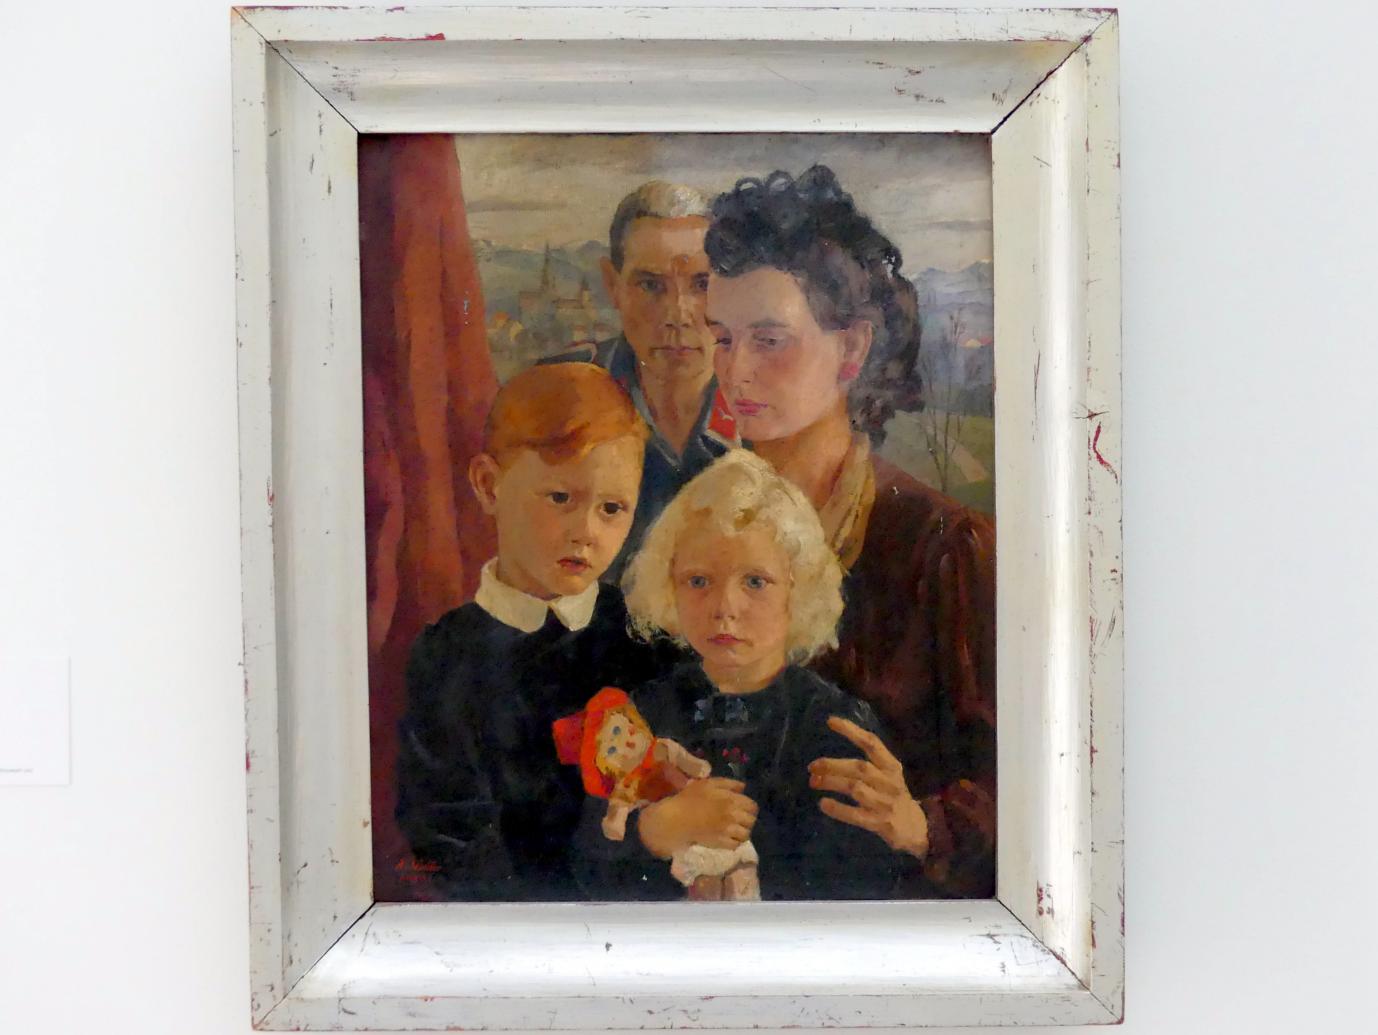 Rudolf Schüller (1943), Meine Familie, Linz, Lentos Kunstmuseum Linz, Saal 6 - Nationalsozialistische Propaganda, "Entartete Kunst" und Exil, 1943